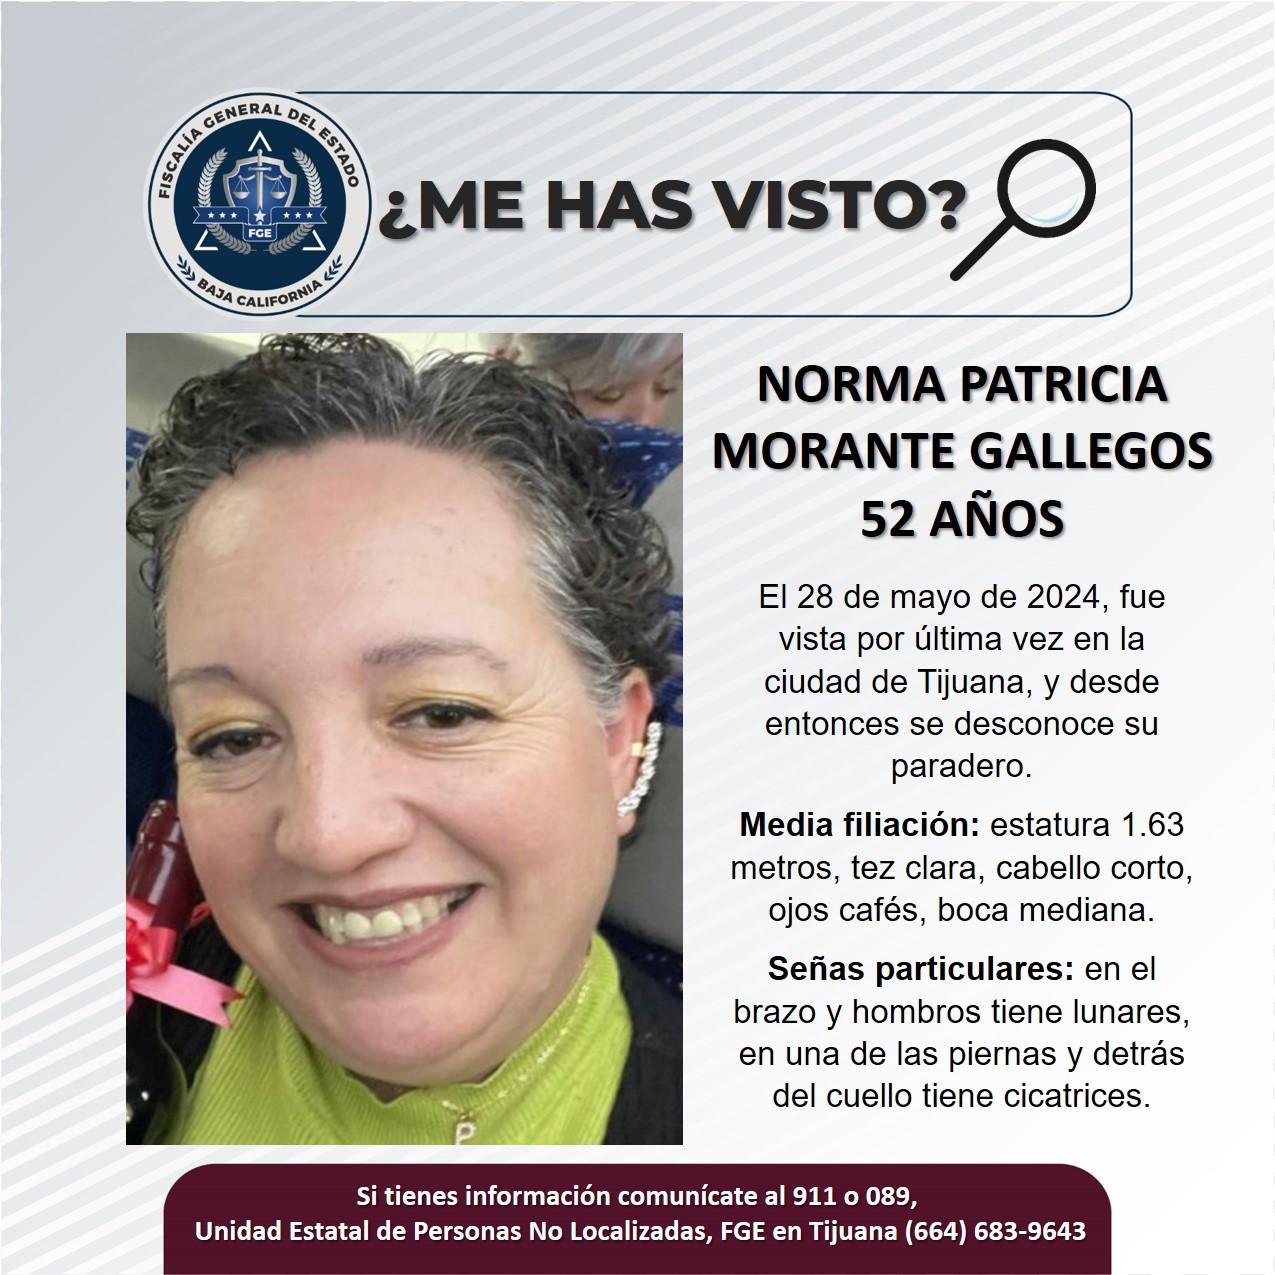 Servicio social: Se busca a Norma Patricia Morante Gallegos de 52 años de edad